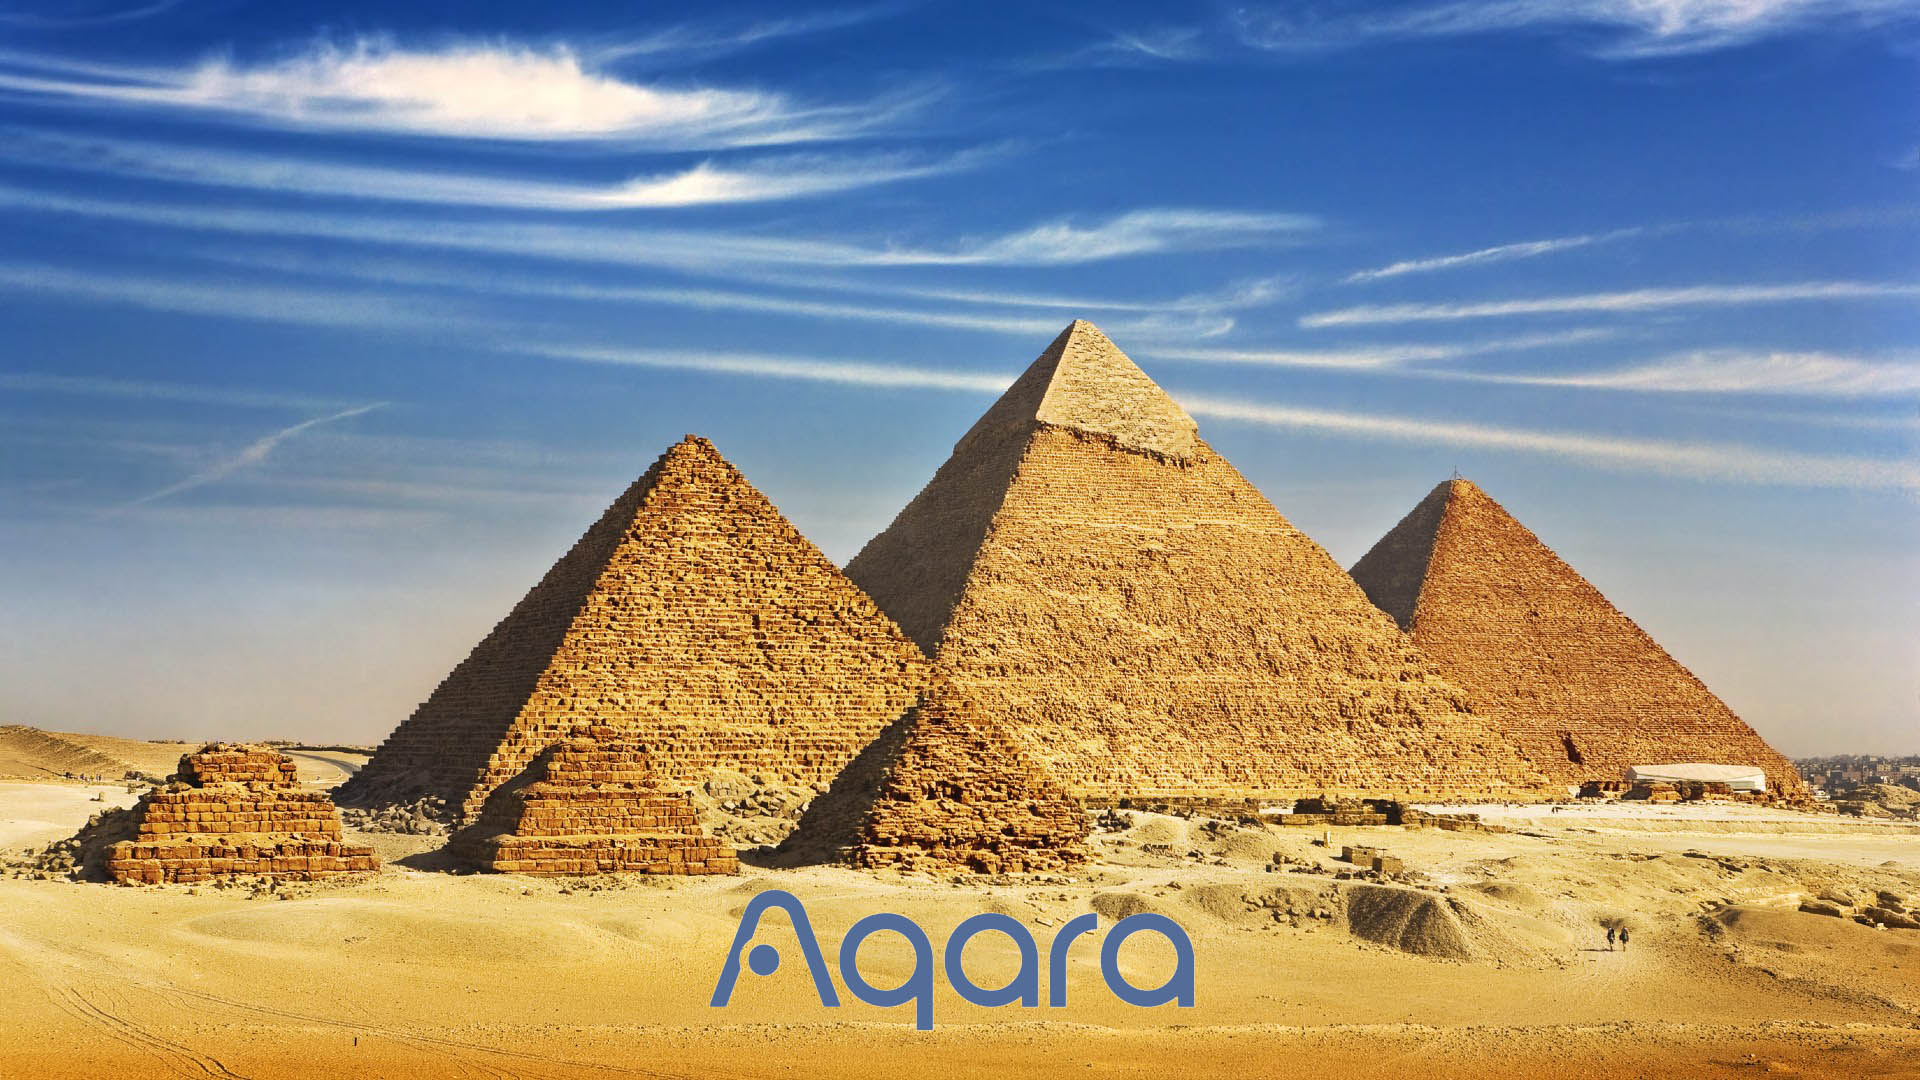 Aqara Security at the Great Pyramid of Giza